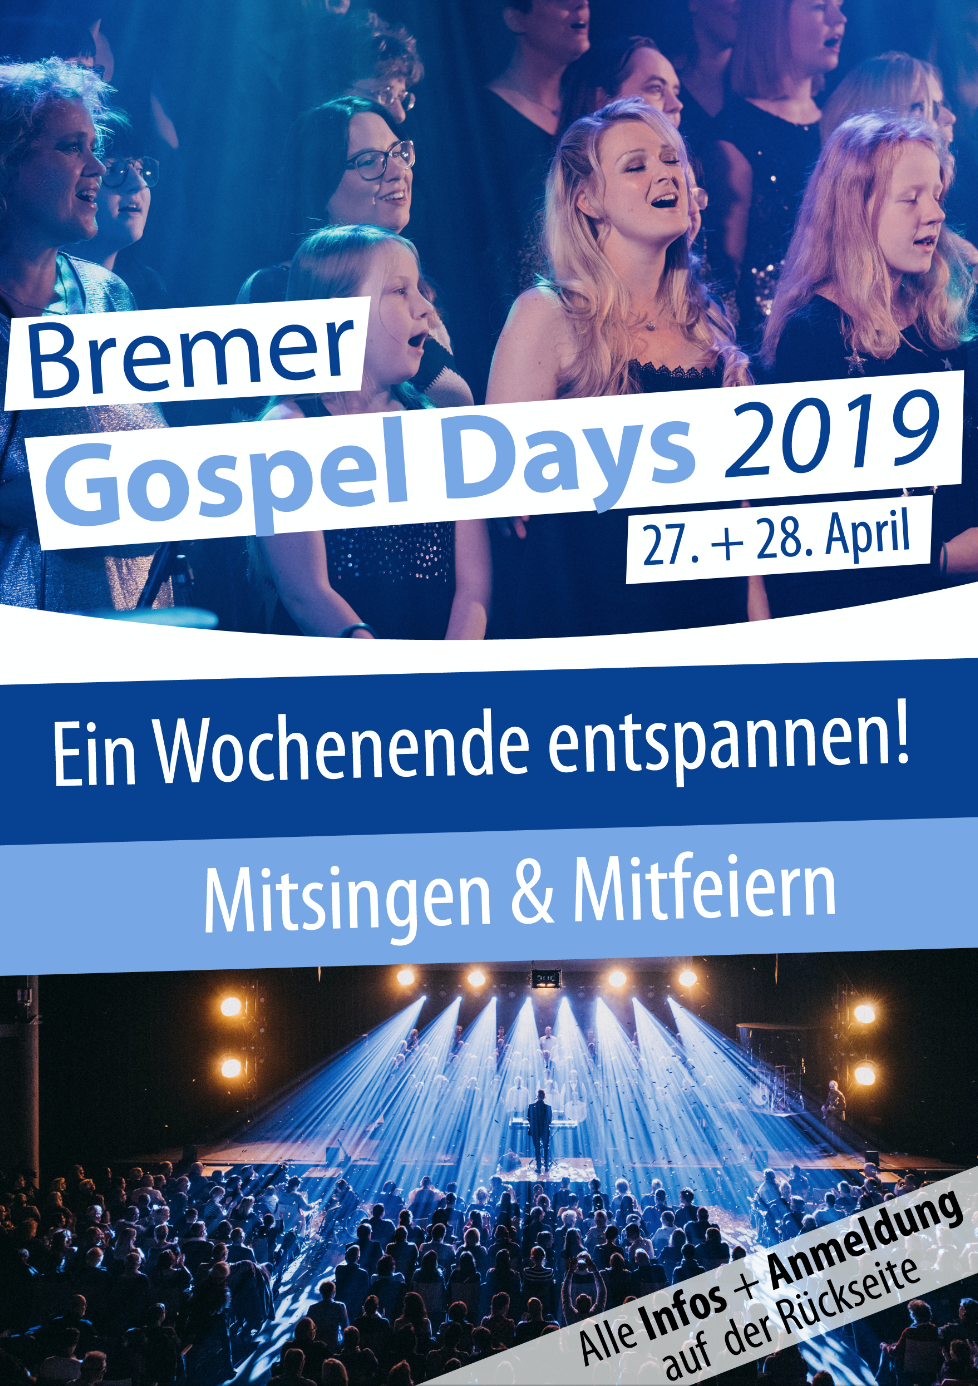 Bremer Gospel Day 2019